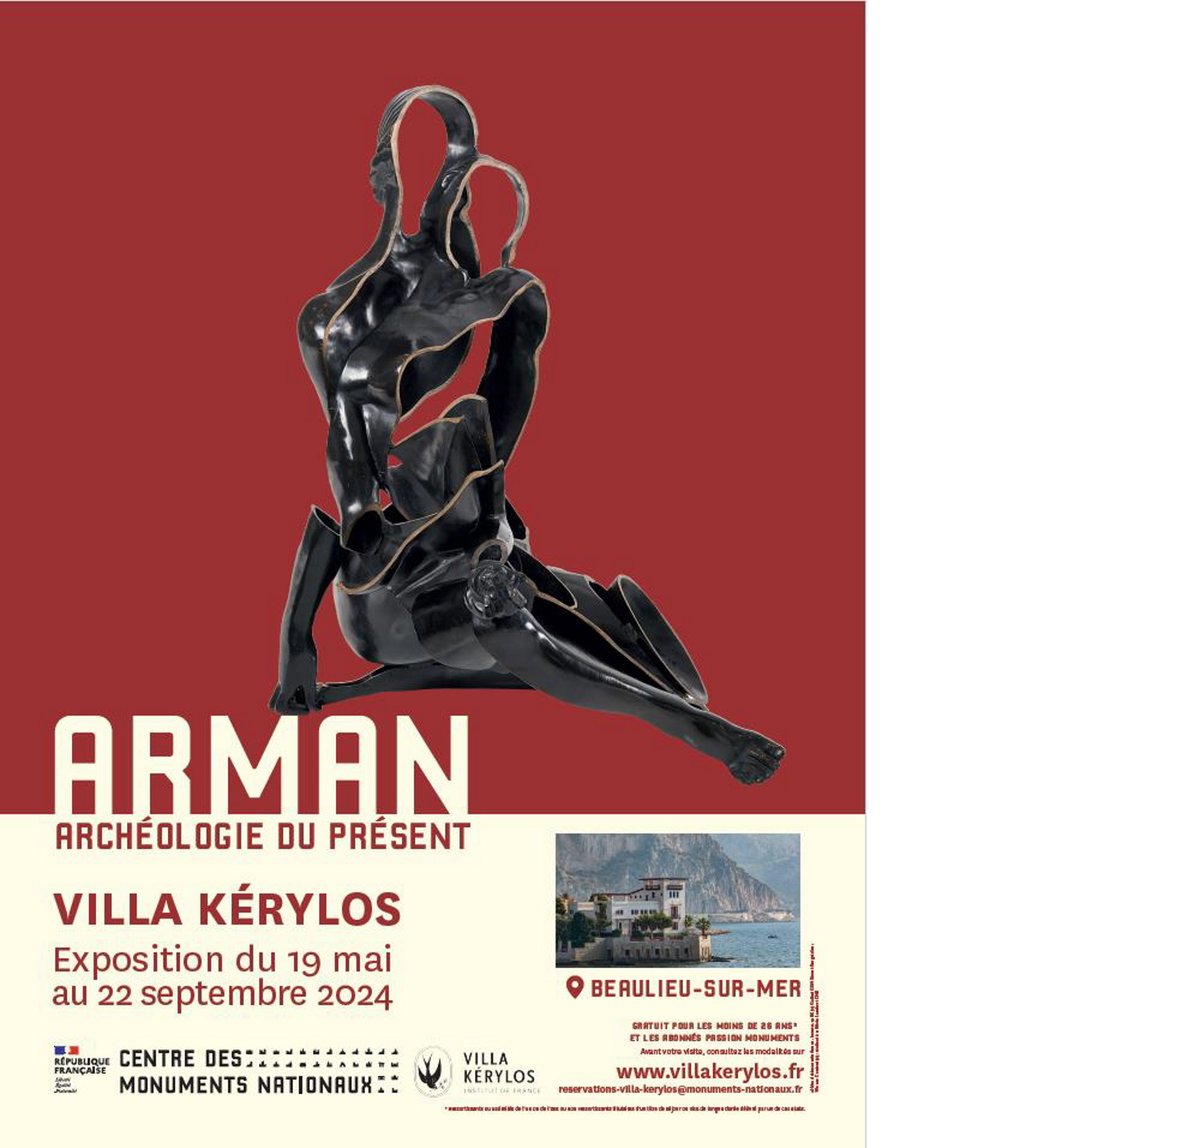 Pour sa réouverture, la Villa Kérylos vous invite à venir découvrir une nouvelle expo “Arman. Archéologie du présent” composer d'une cinquantaine d'oeuvres uniques datants des années 60 ! 🖼️

📆 Du 19 mai au 22 septembre 2024
👉bit.ly/44InKPg

#ExploreNiceCotedAzur